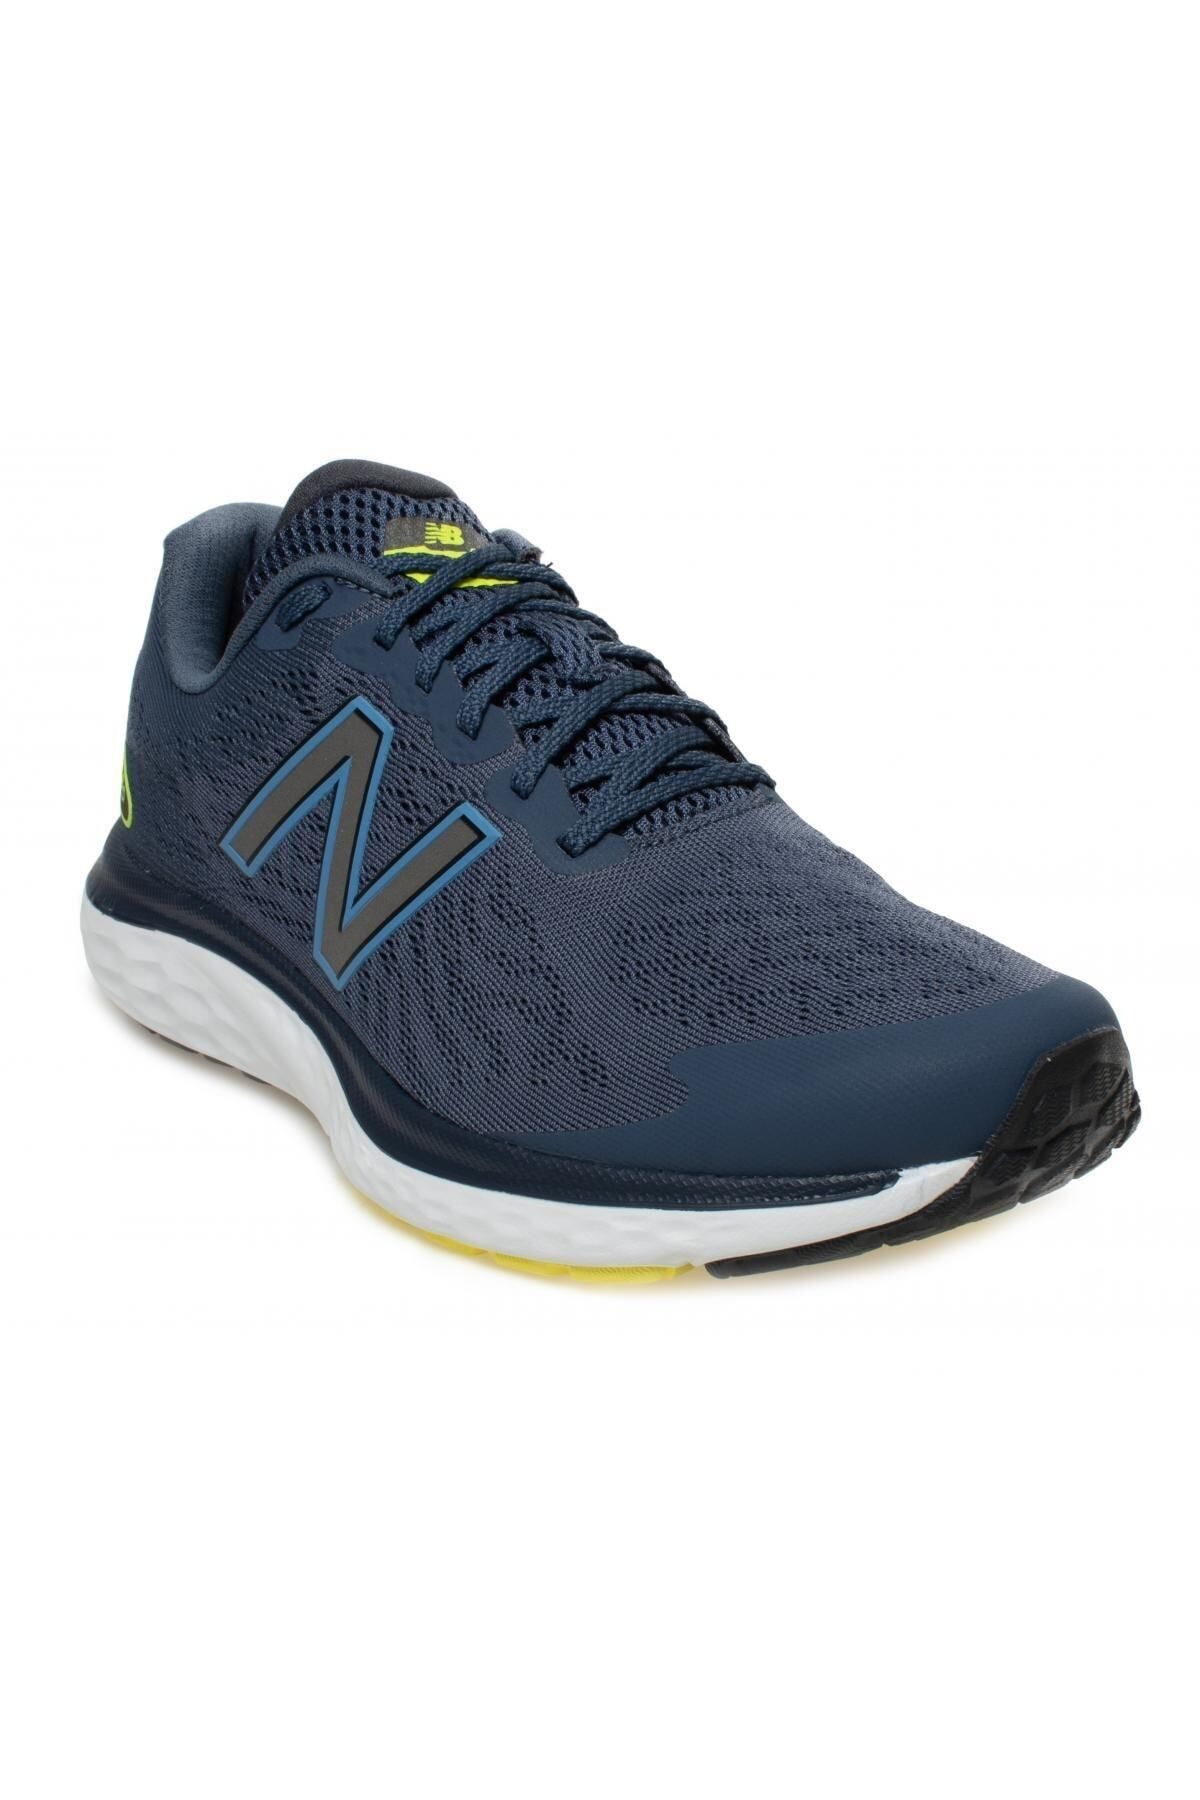 New Balance 680-m Running Shoes Lacivert Erkek Spor Ayakkabı